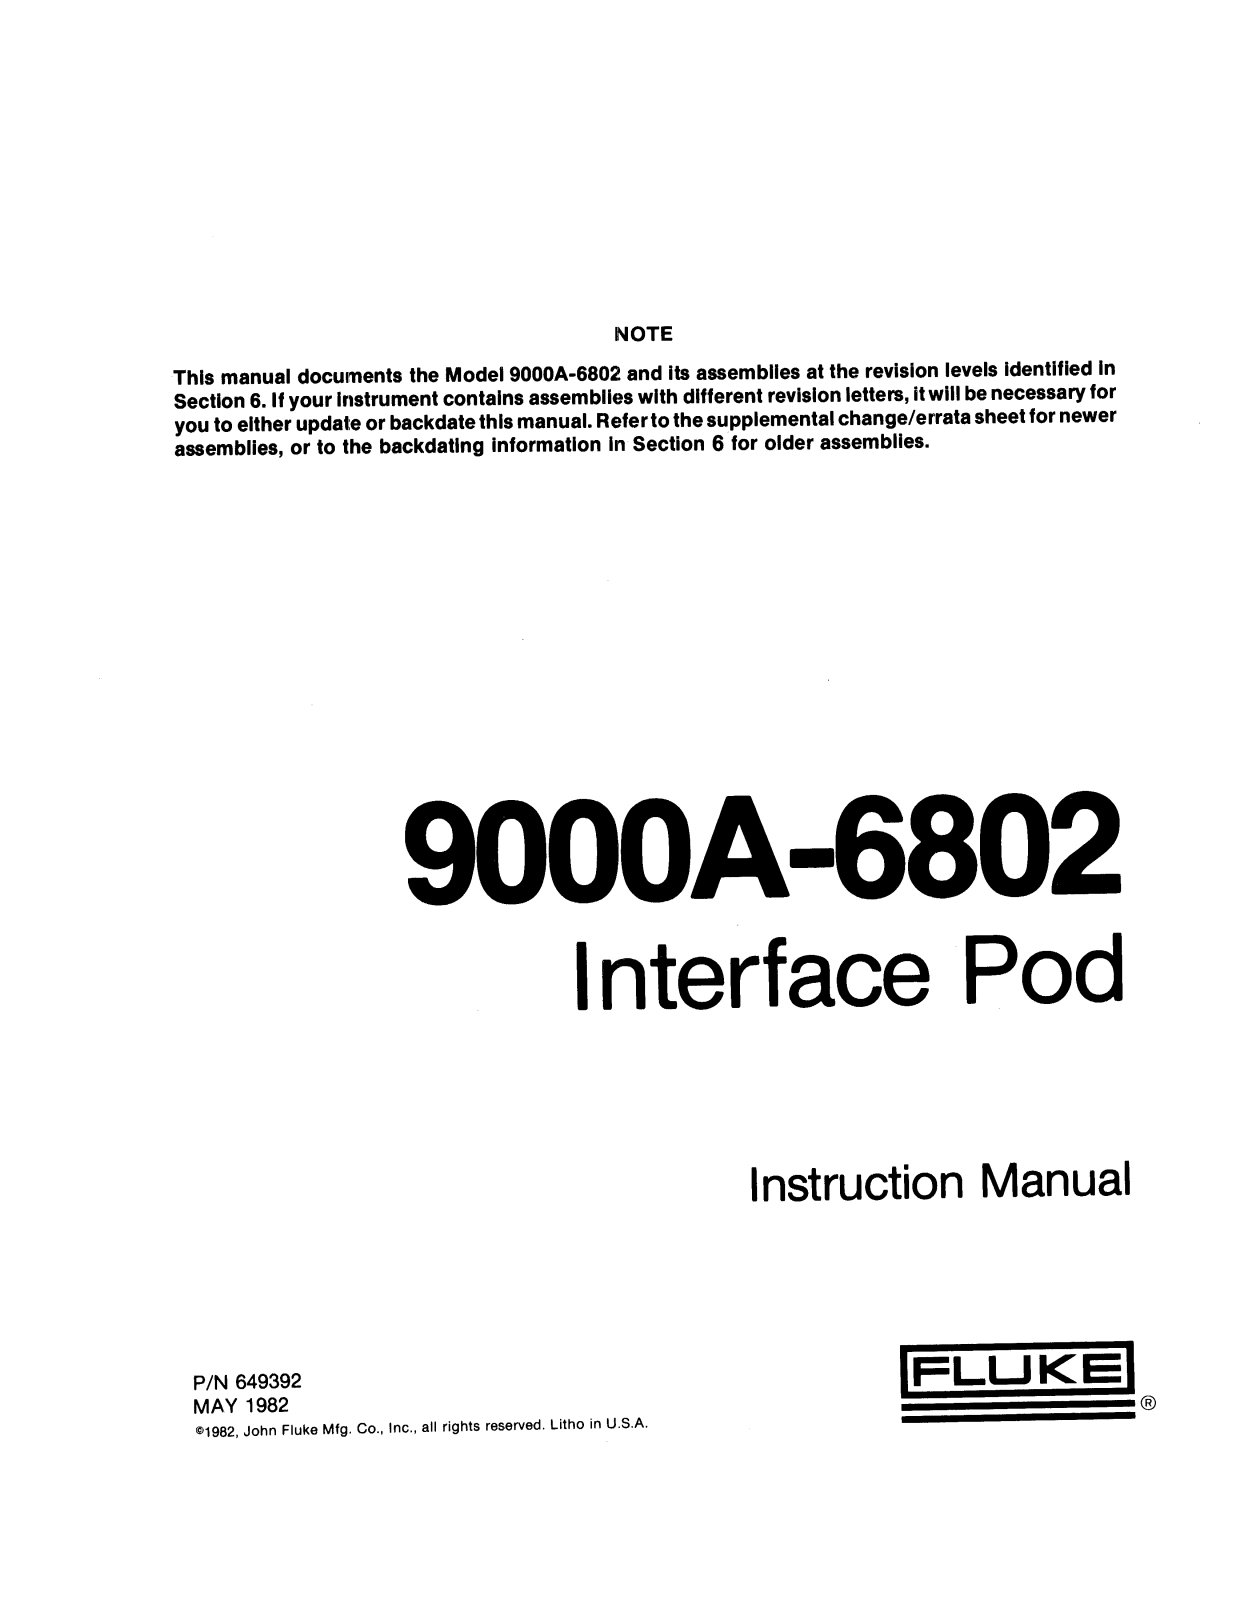 Fluke 9000A-6802 User Manual